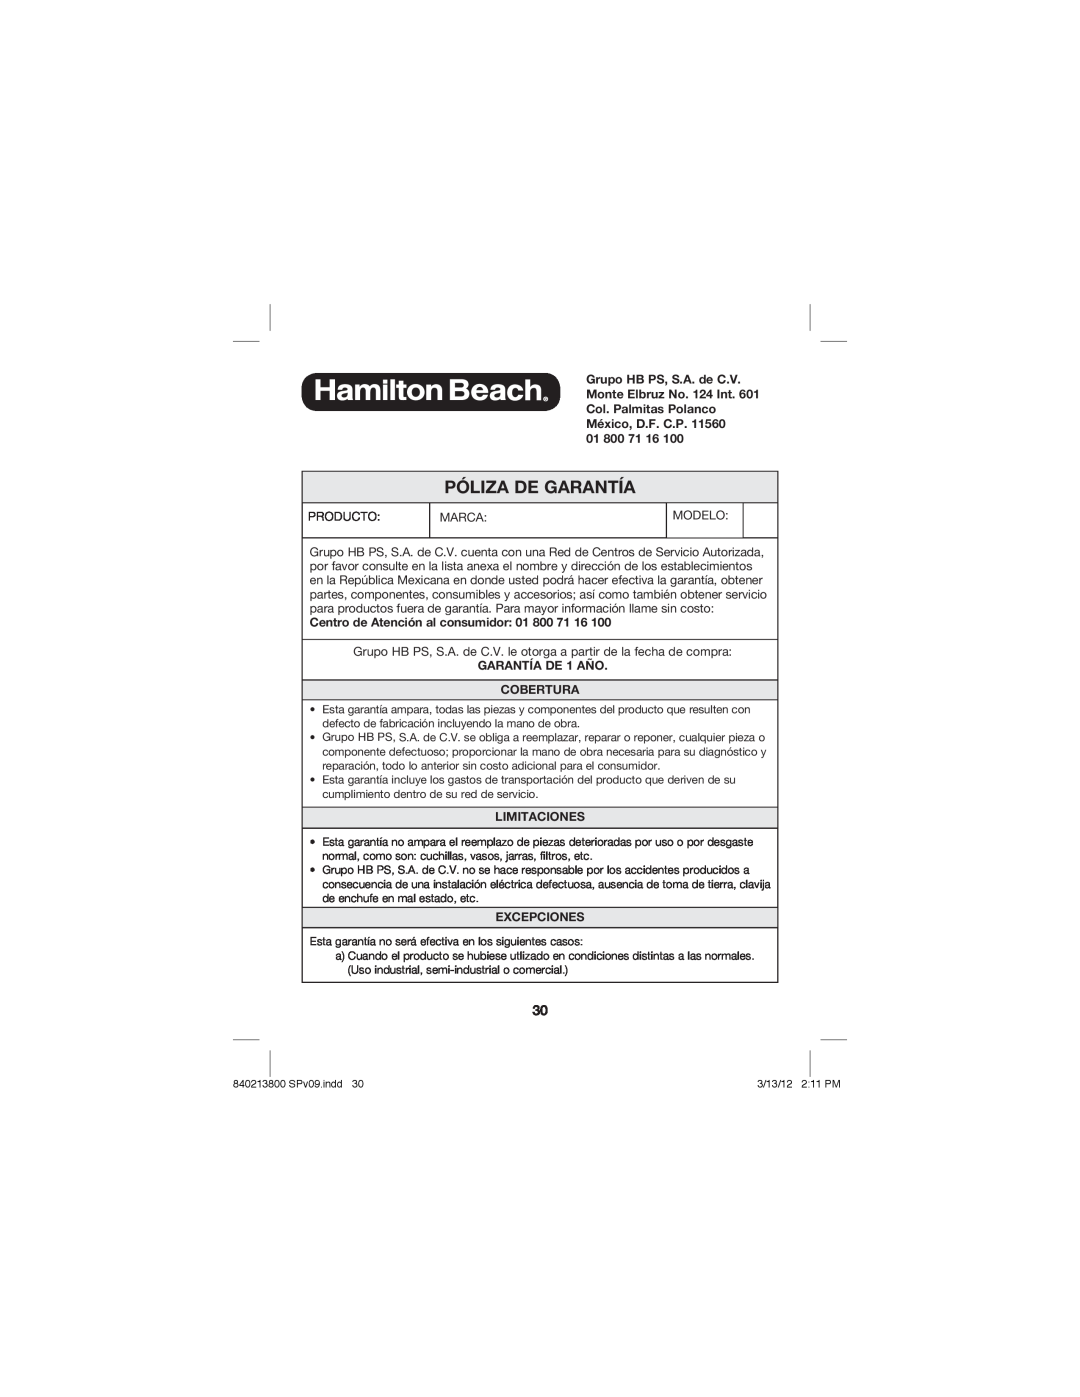 Hamilton Beach Jar Opener manual Centro de Atención al consumidor, GARANTÍA DE 1 AÑO COBERTURA, Limitaciones, Excepciones 